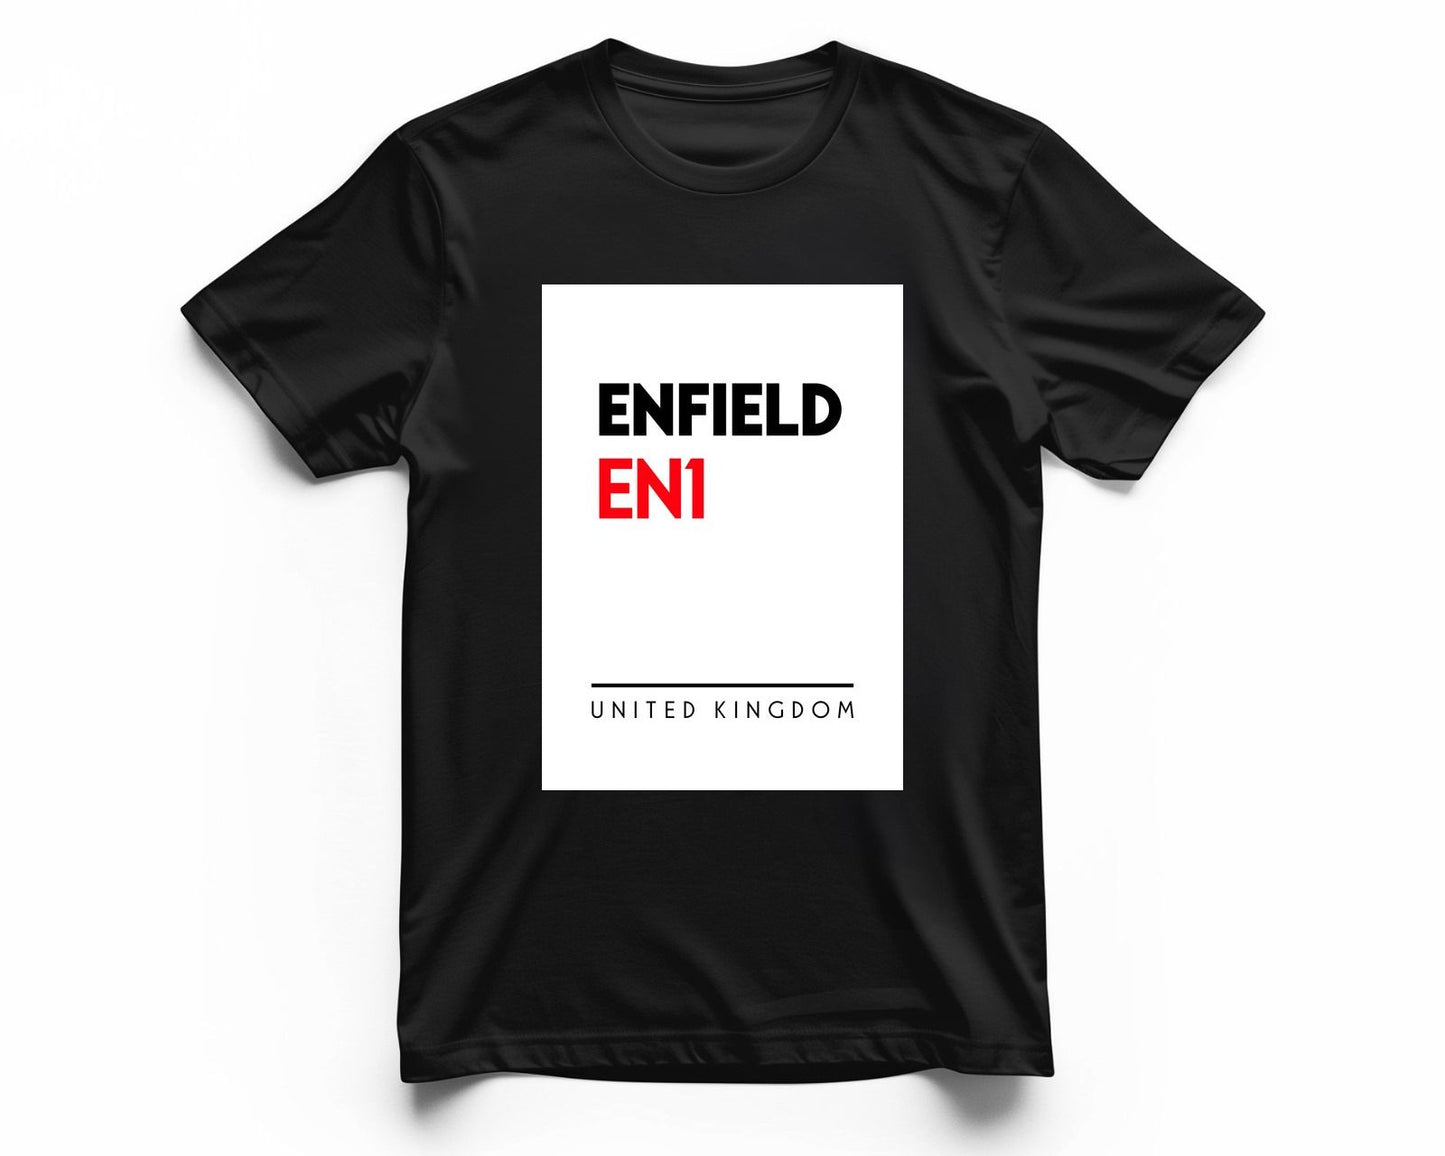 Enfield EN1 Postal Code - @VickyHanggara